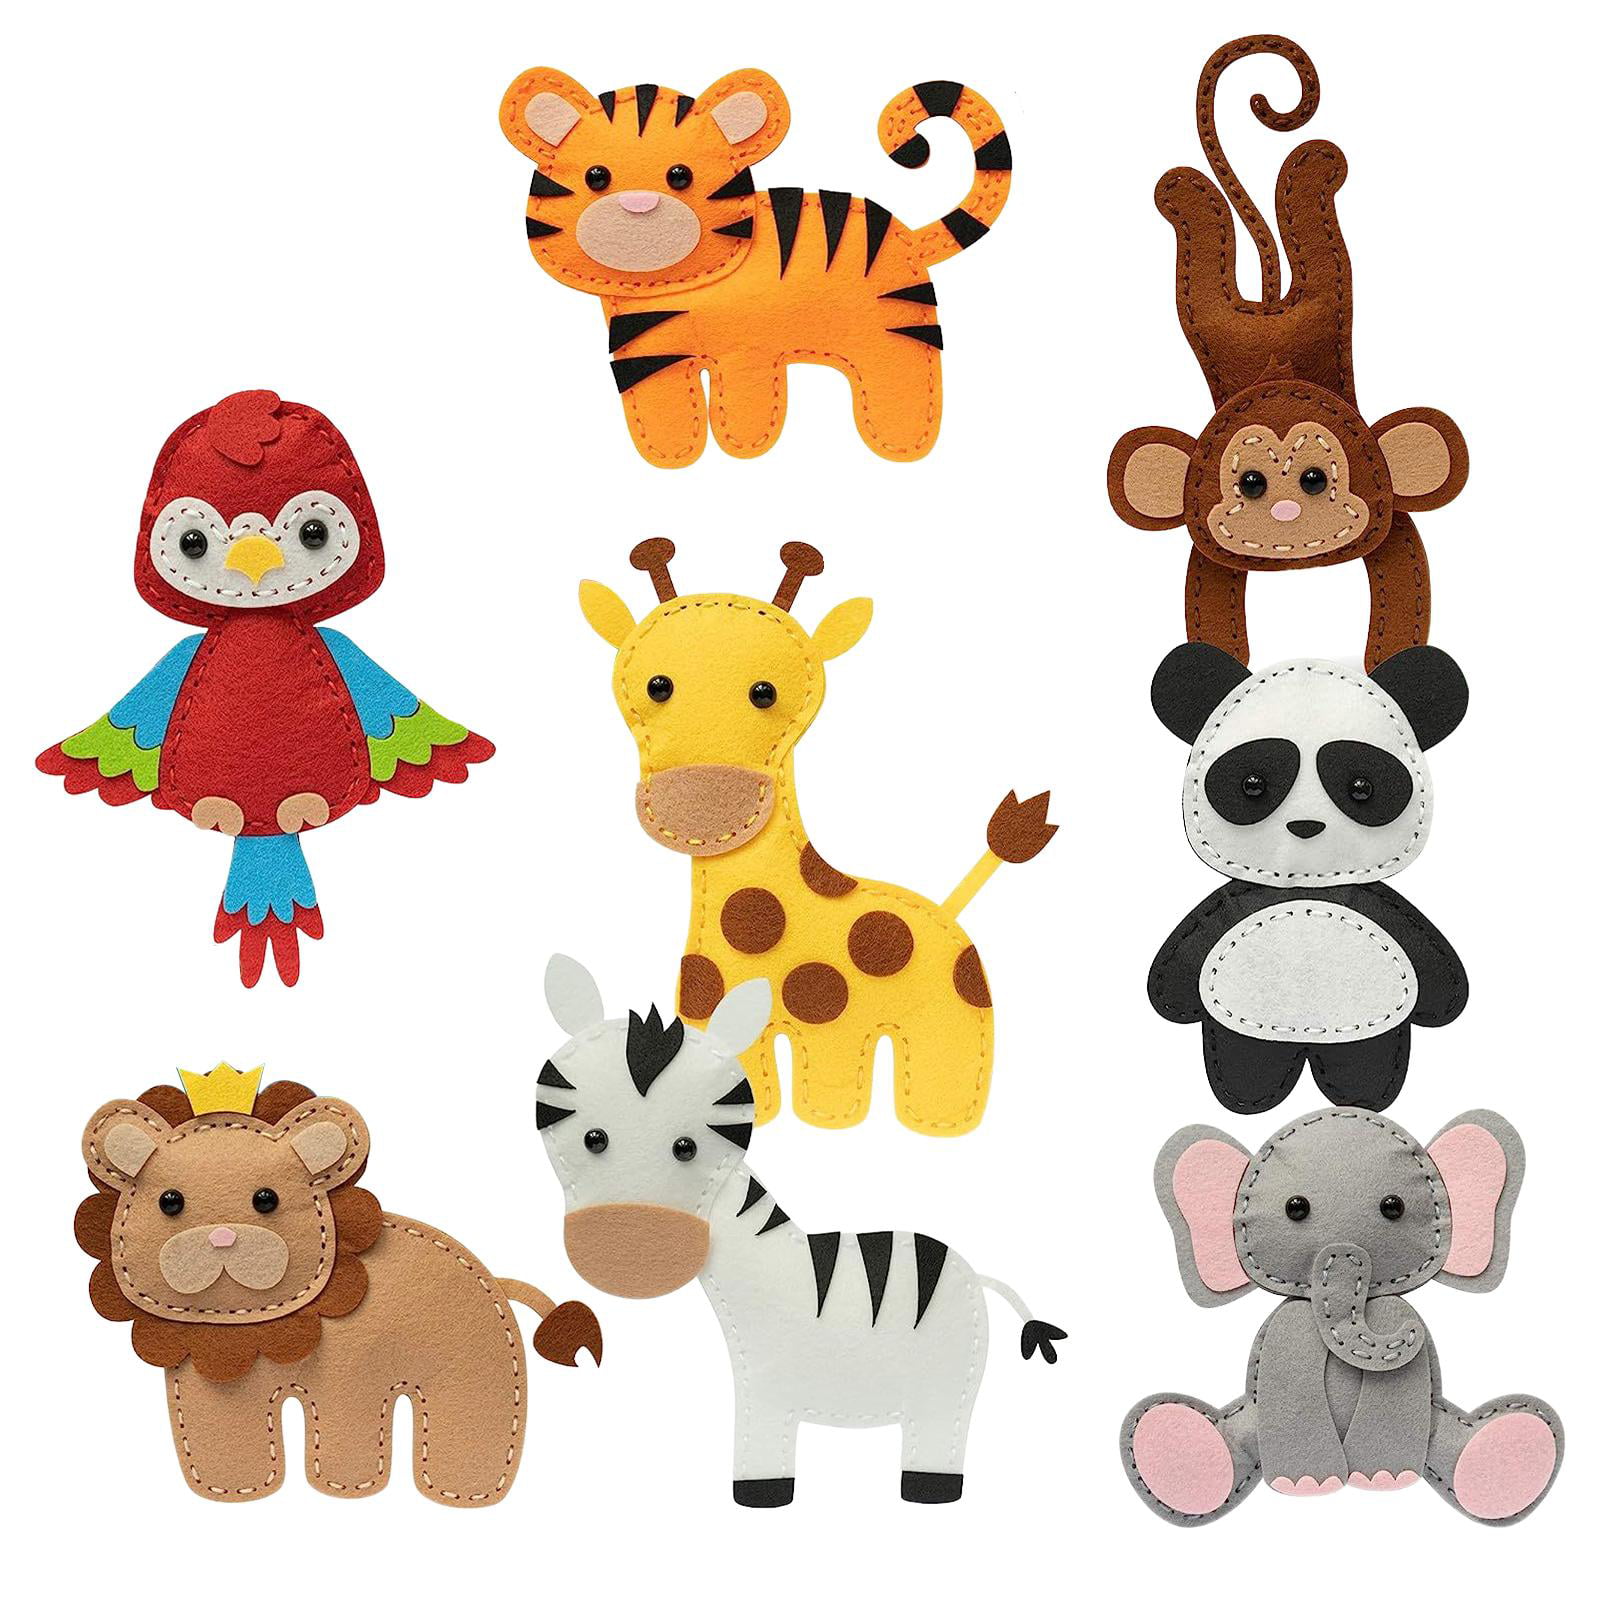 Ten Little Bees on X: Felt animals Safari animals Stuffed animals Felt  décor Jungle animals felt Handmade felt toys Zoo animals    / X